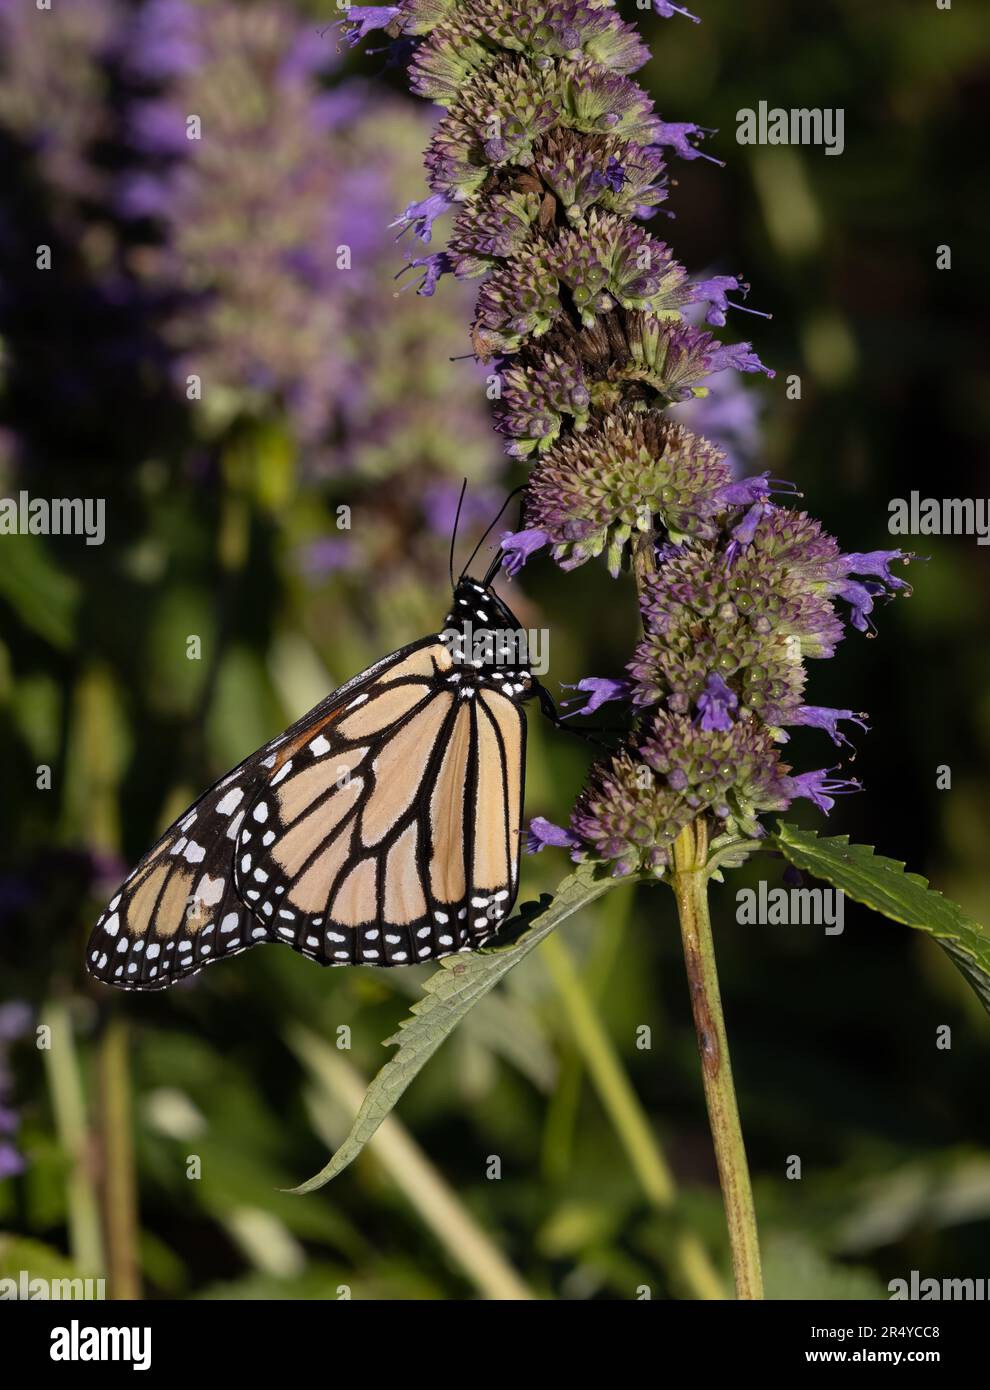 Relation symbiotique du papillon monarque (Danaus plexippus) sur l'hysope anis (Agastache foeniculum), Delaware Botanic Gardens, Delaware Banque D'Images